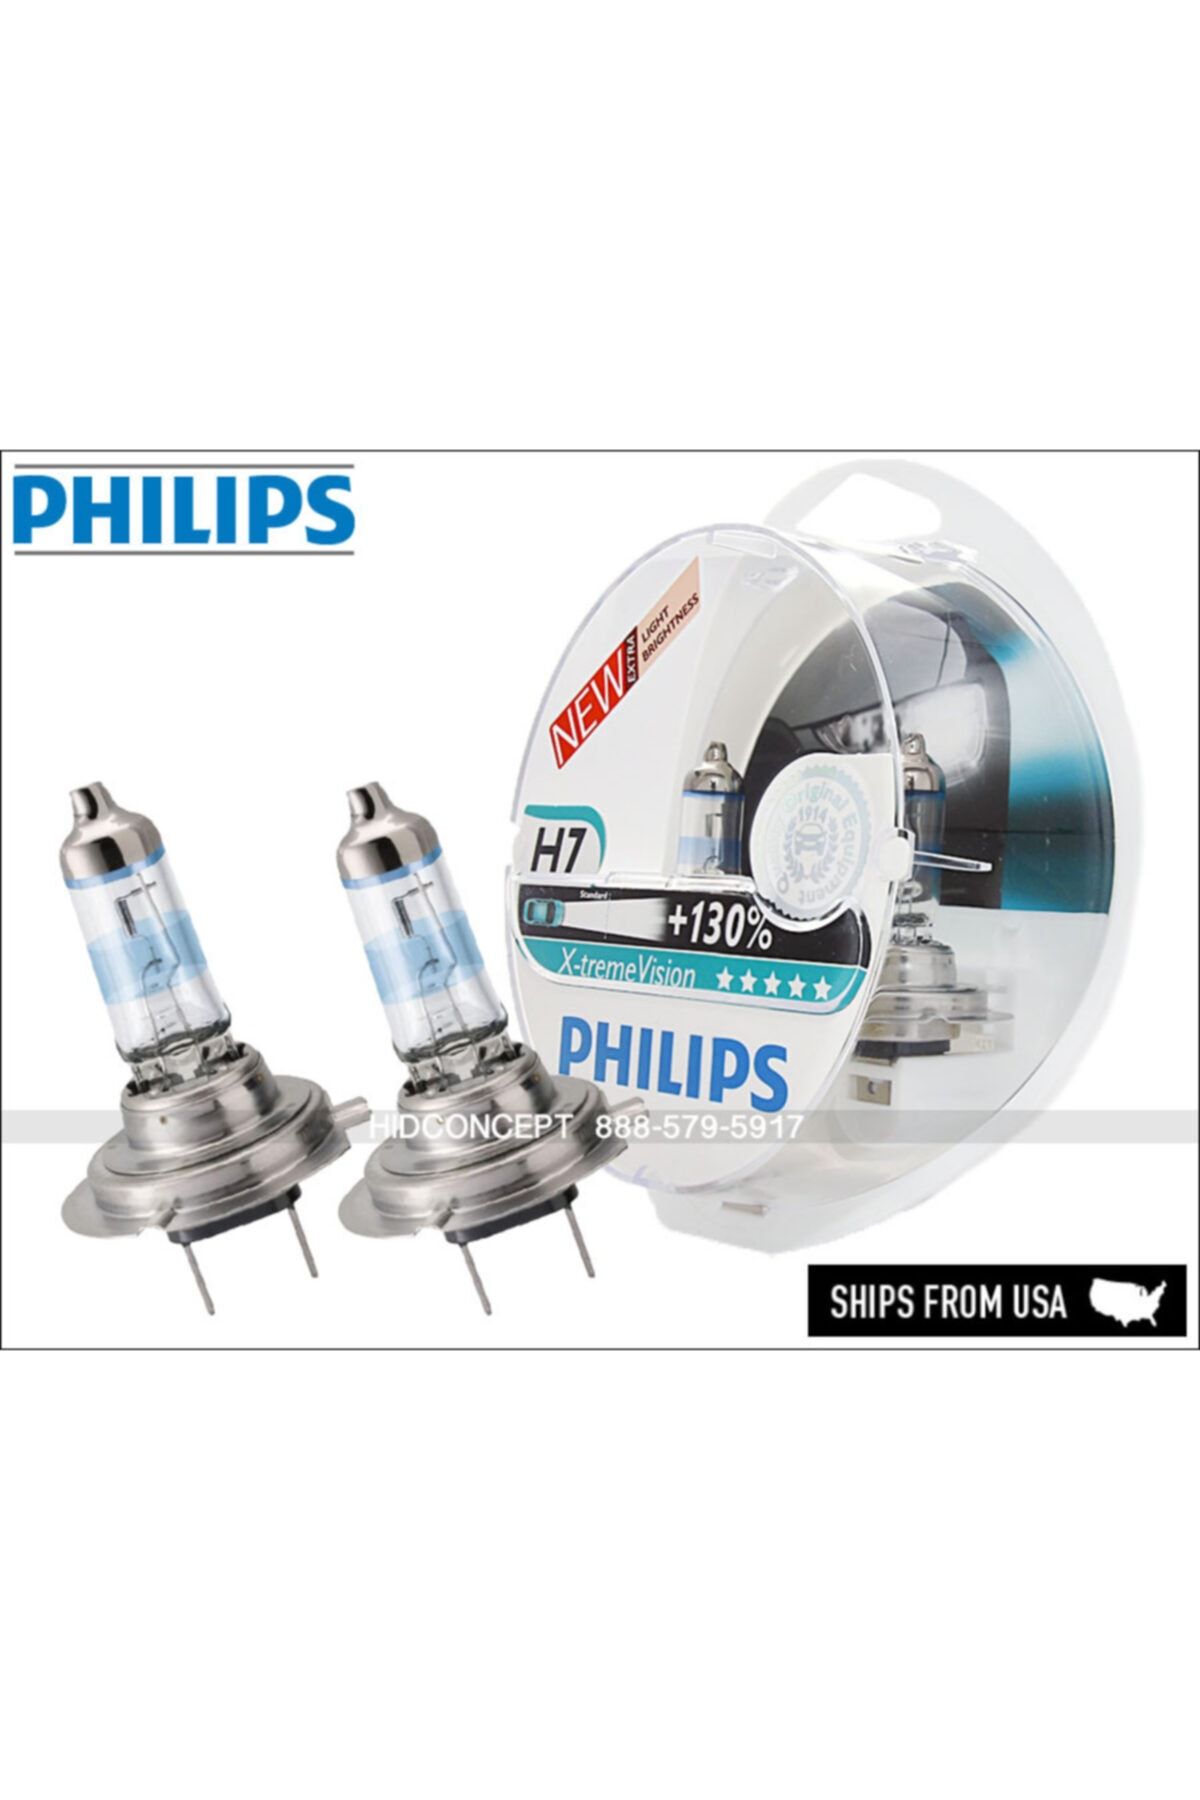 Филипс 130. H7 Philips x-treme Vision 12972xv. H4 x-treme +130% Philips. Филипс h7 +130. Лампа н7 Филипс +130.